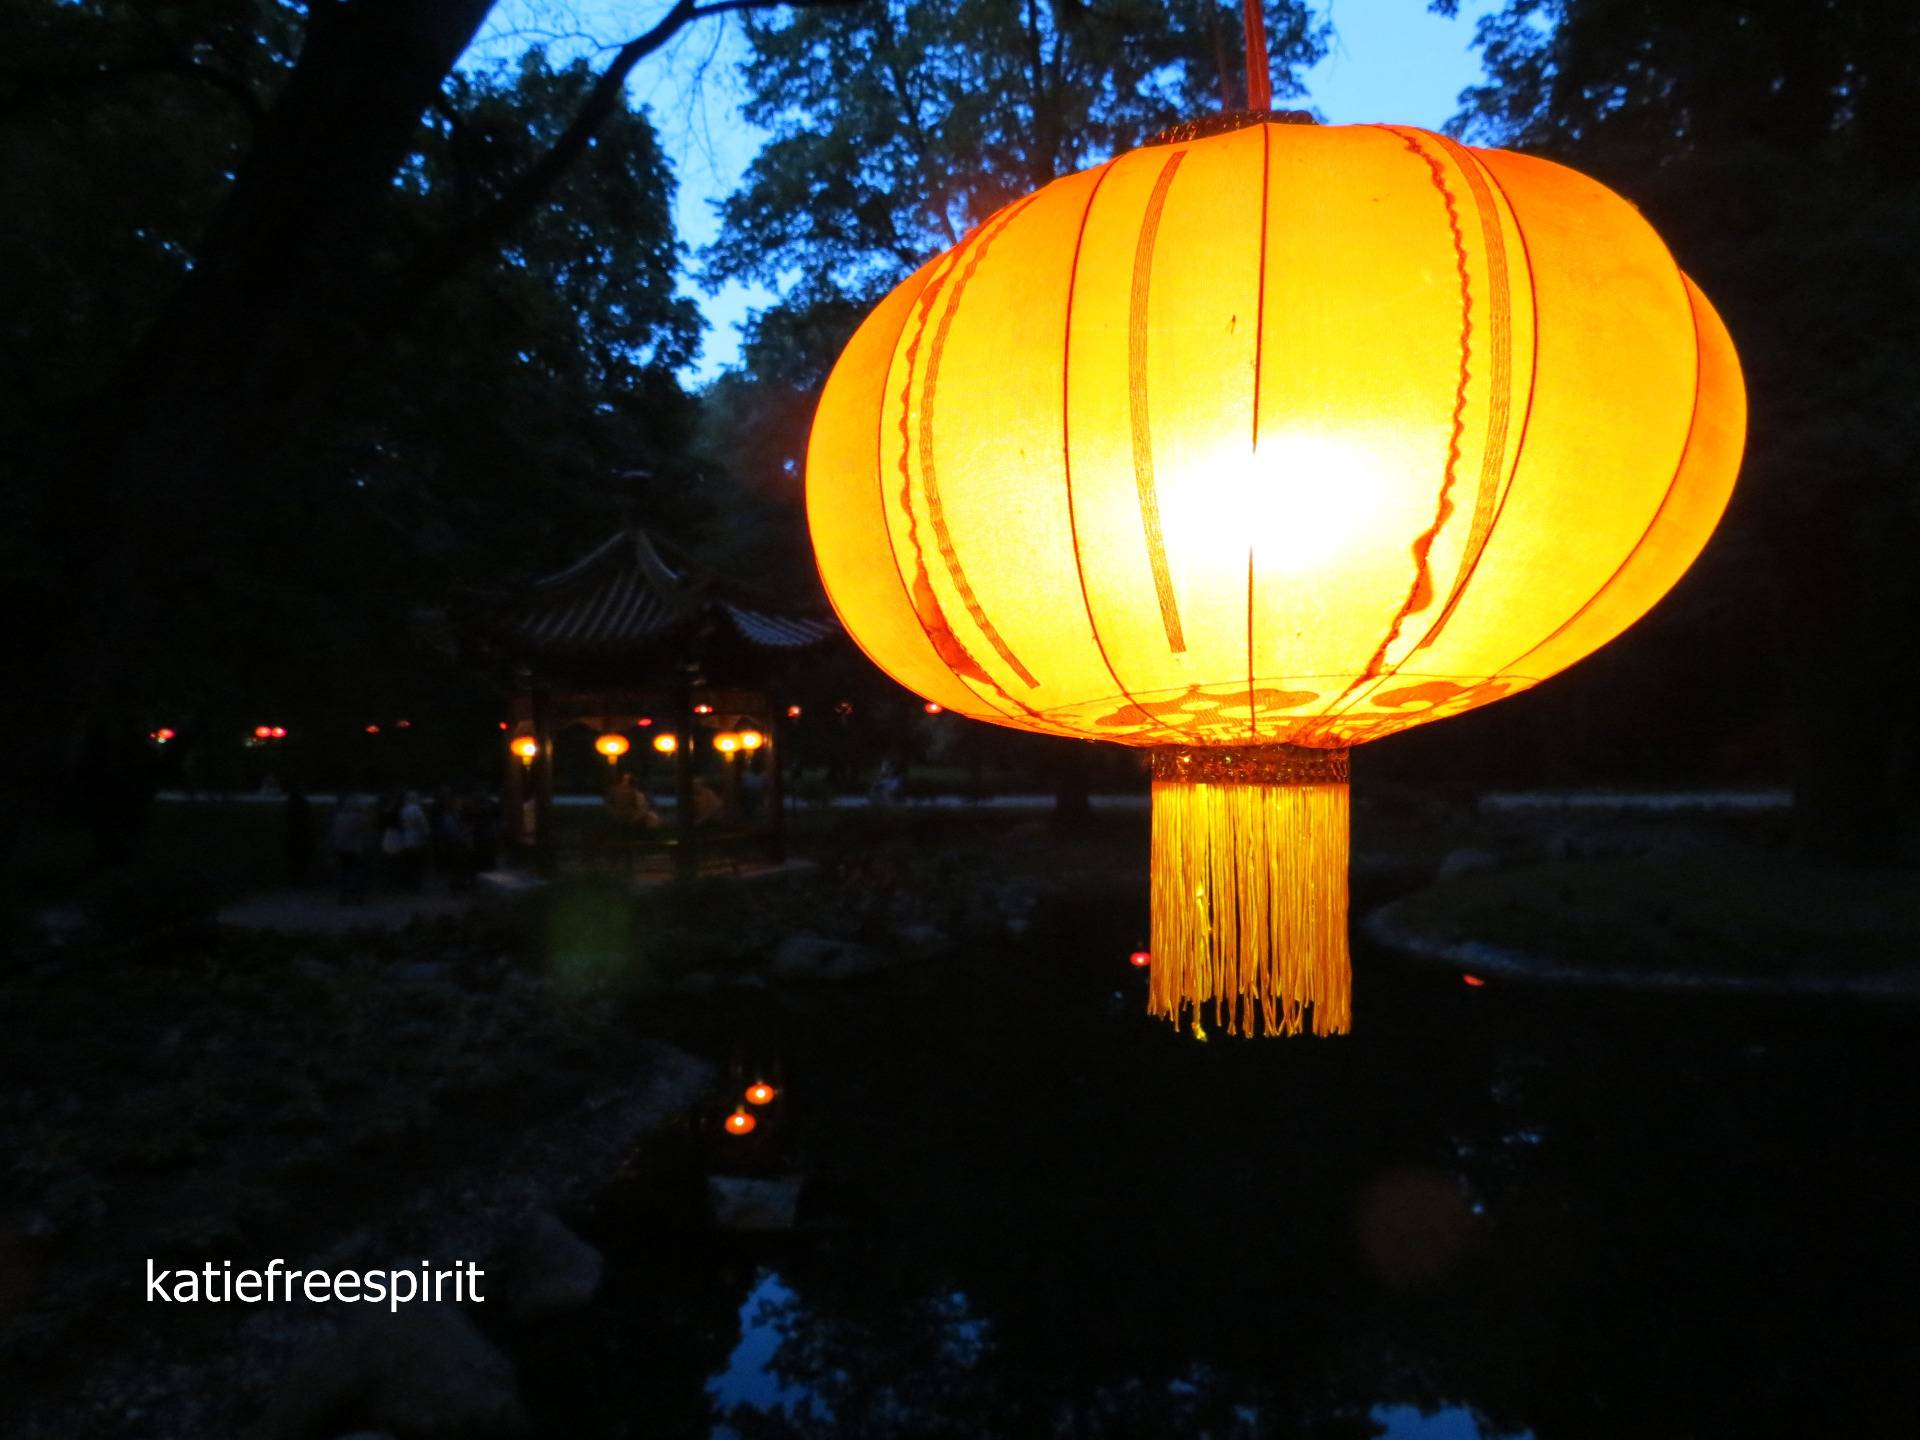 Wieczorny spacer po rozświetlonym lampionami Ogrodzie Chińskim w Łazienkach Królewskich